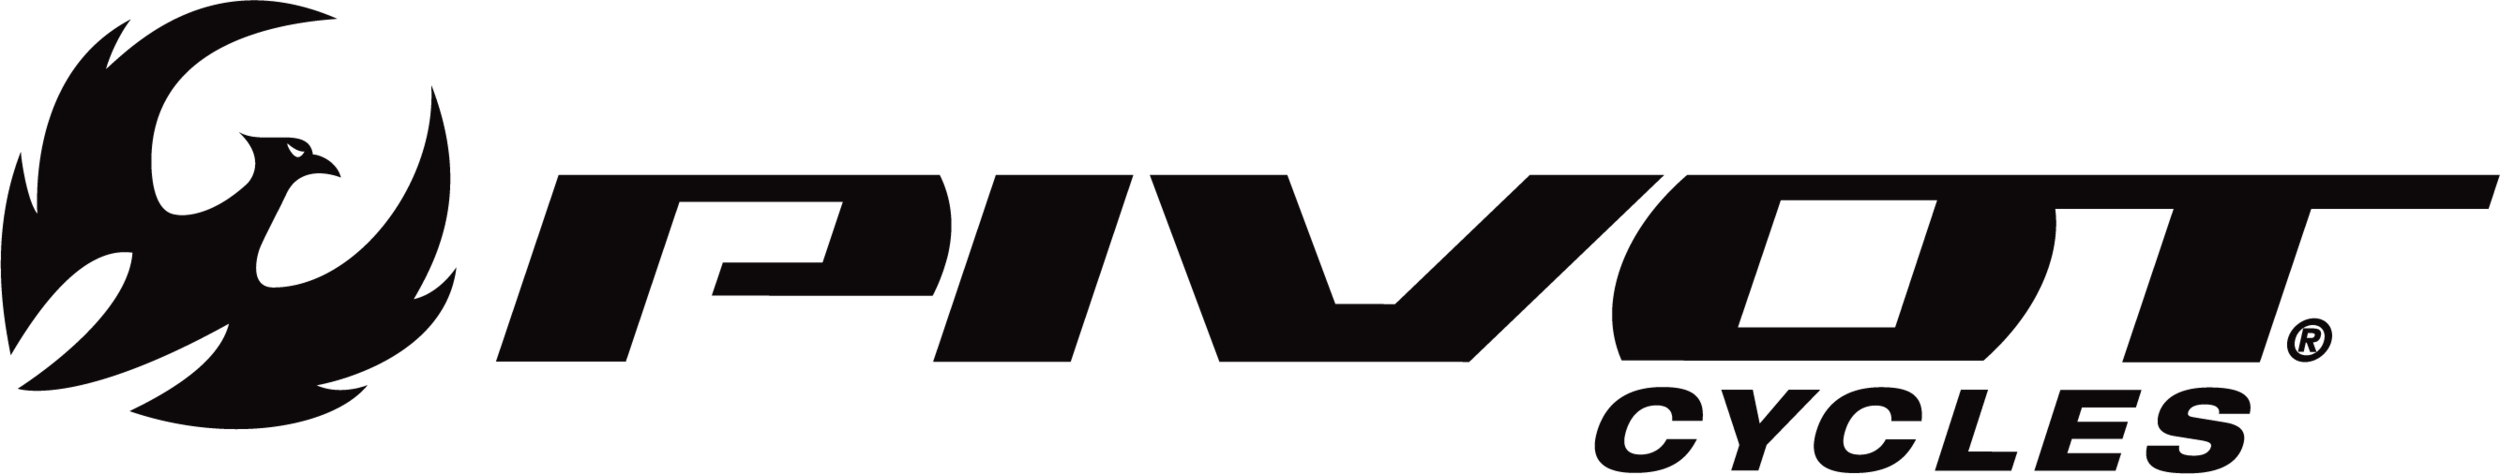 pivot-logo.png